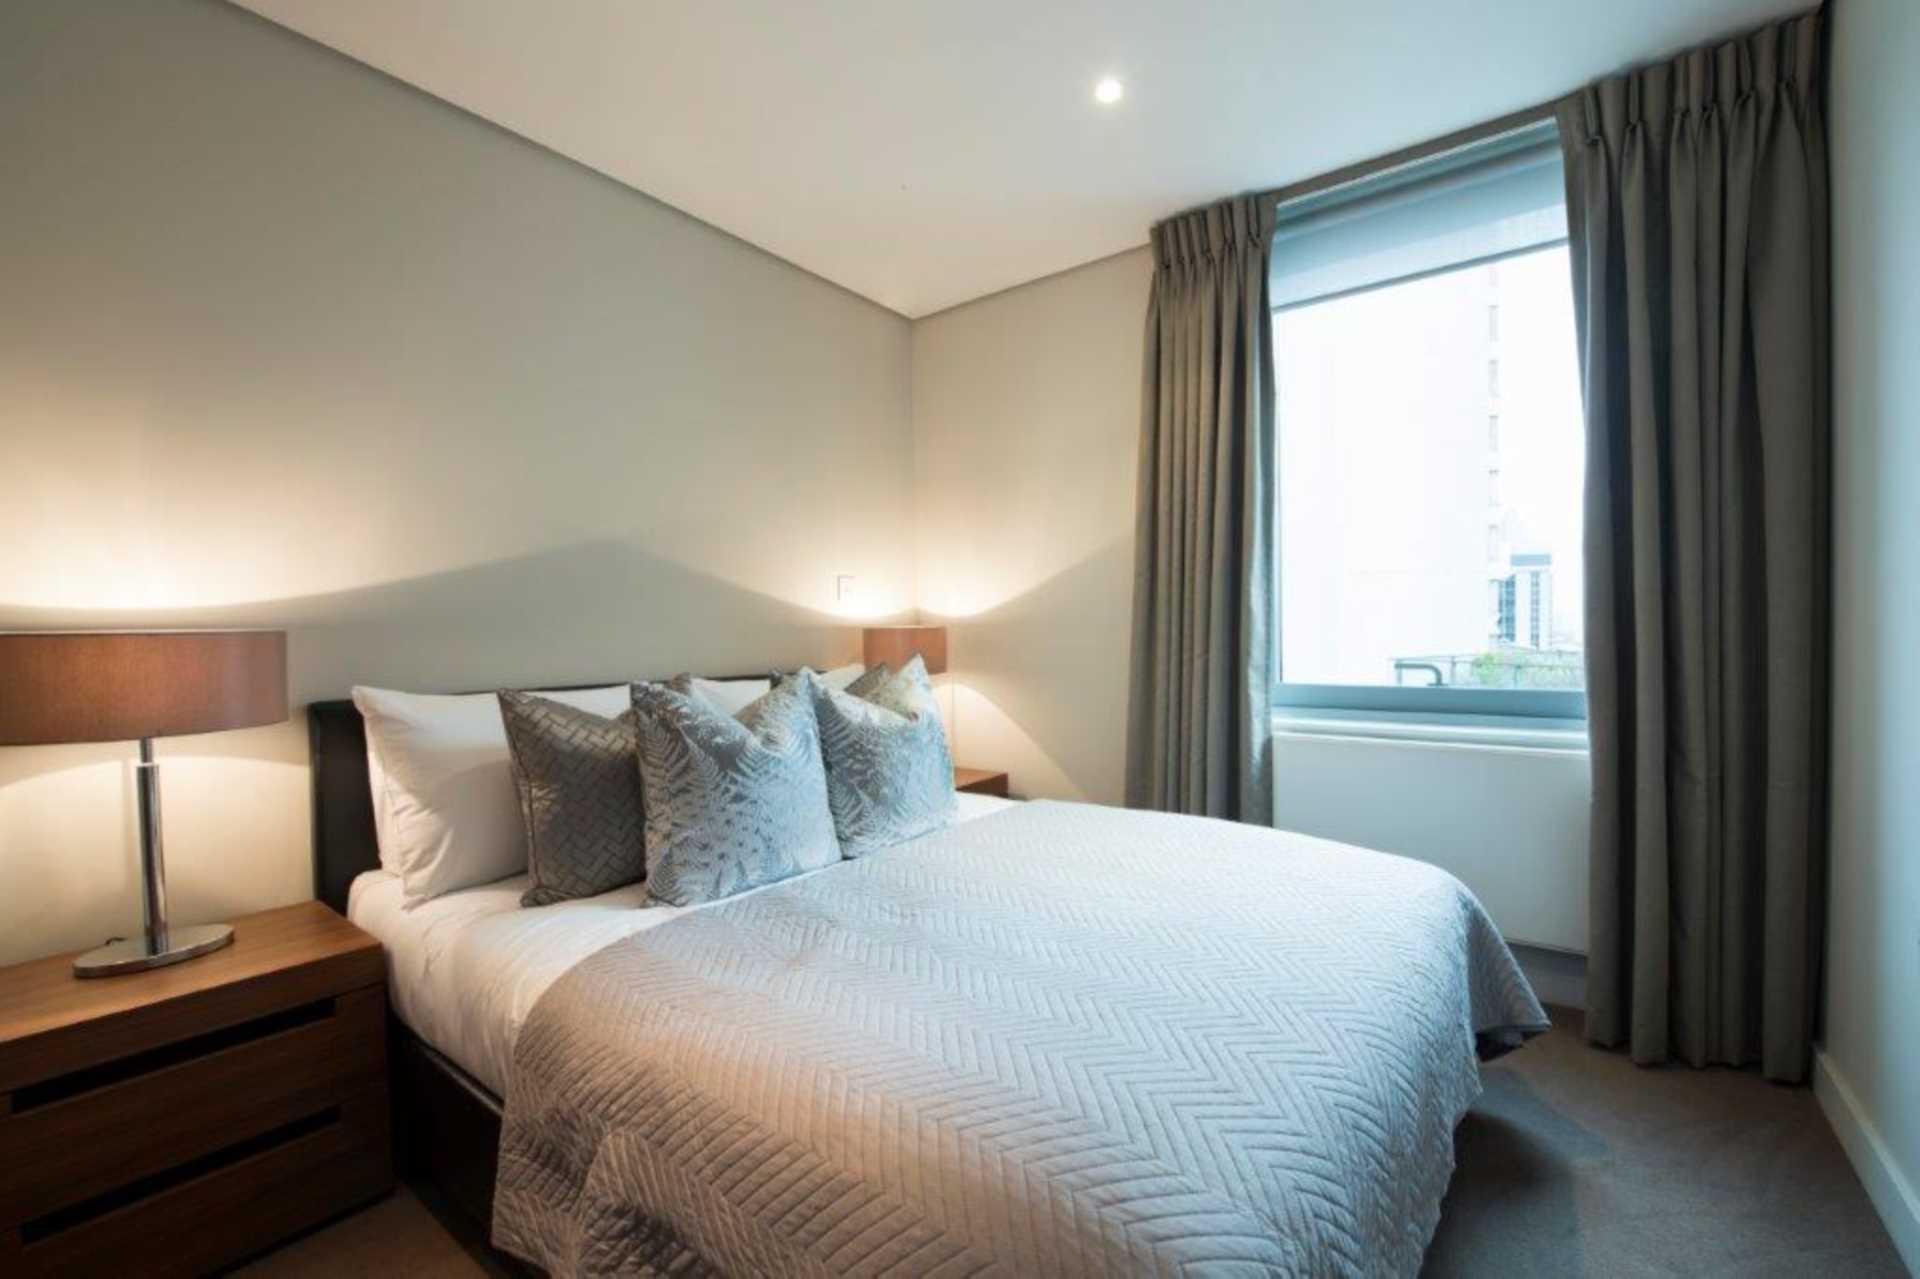 London W2 1AP 3 bed flat rental property internal/external image-3